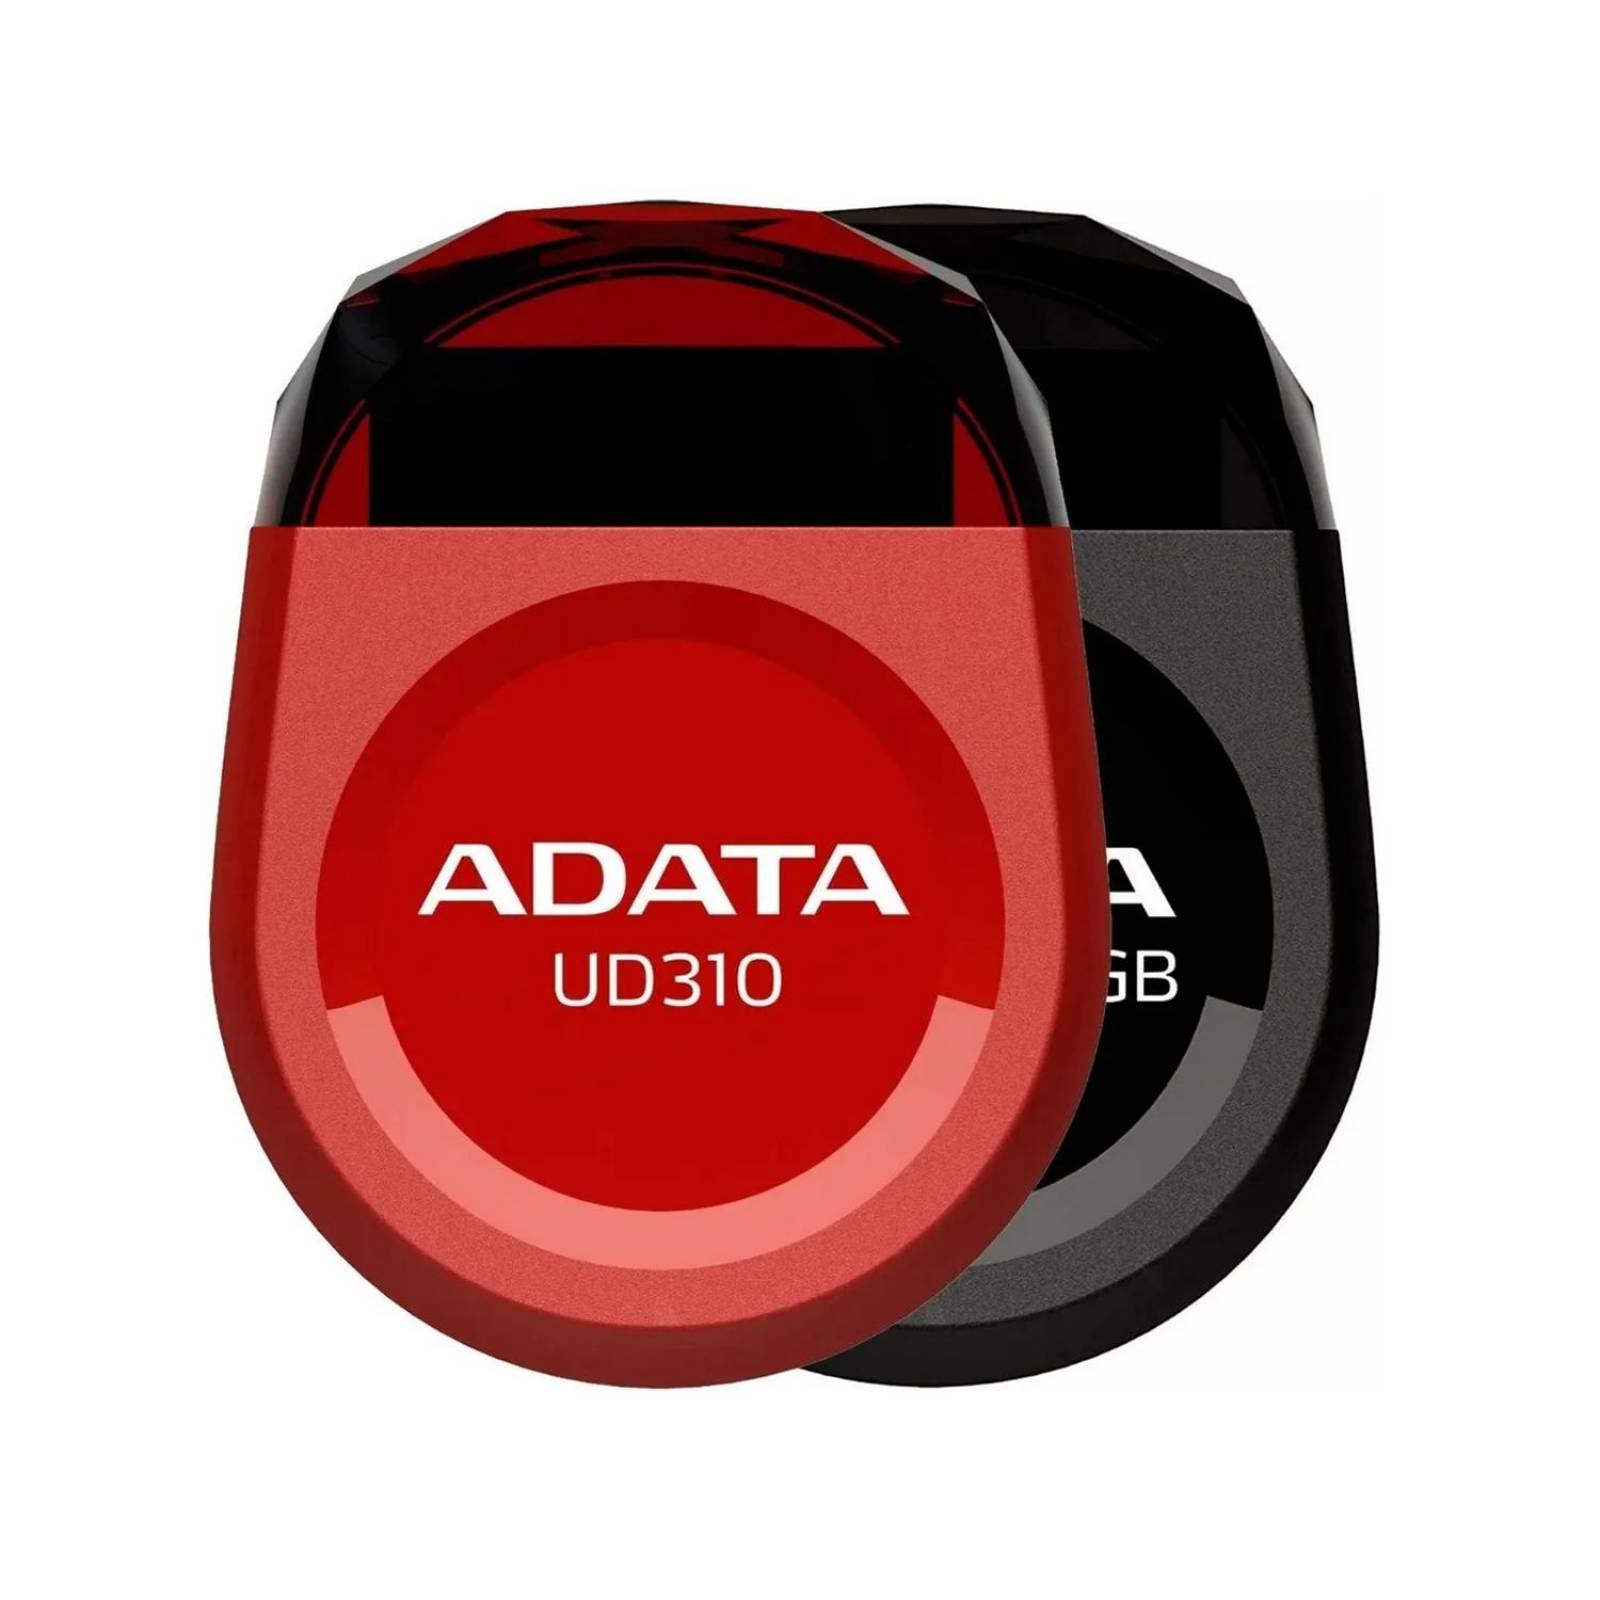 Memoria USB 32GB ADATA UD310 2.0 Durable Tipo Joya Compacta AUD310-32G-RBK 